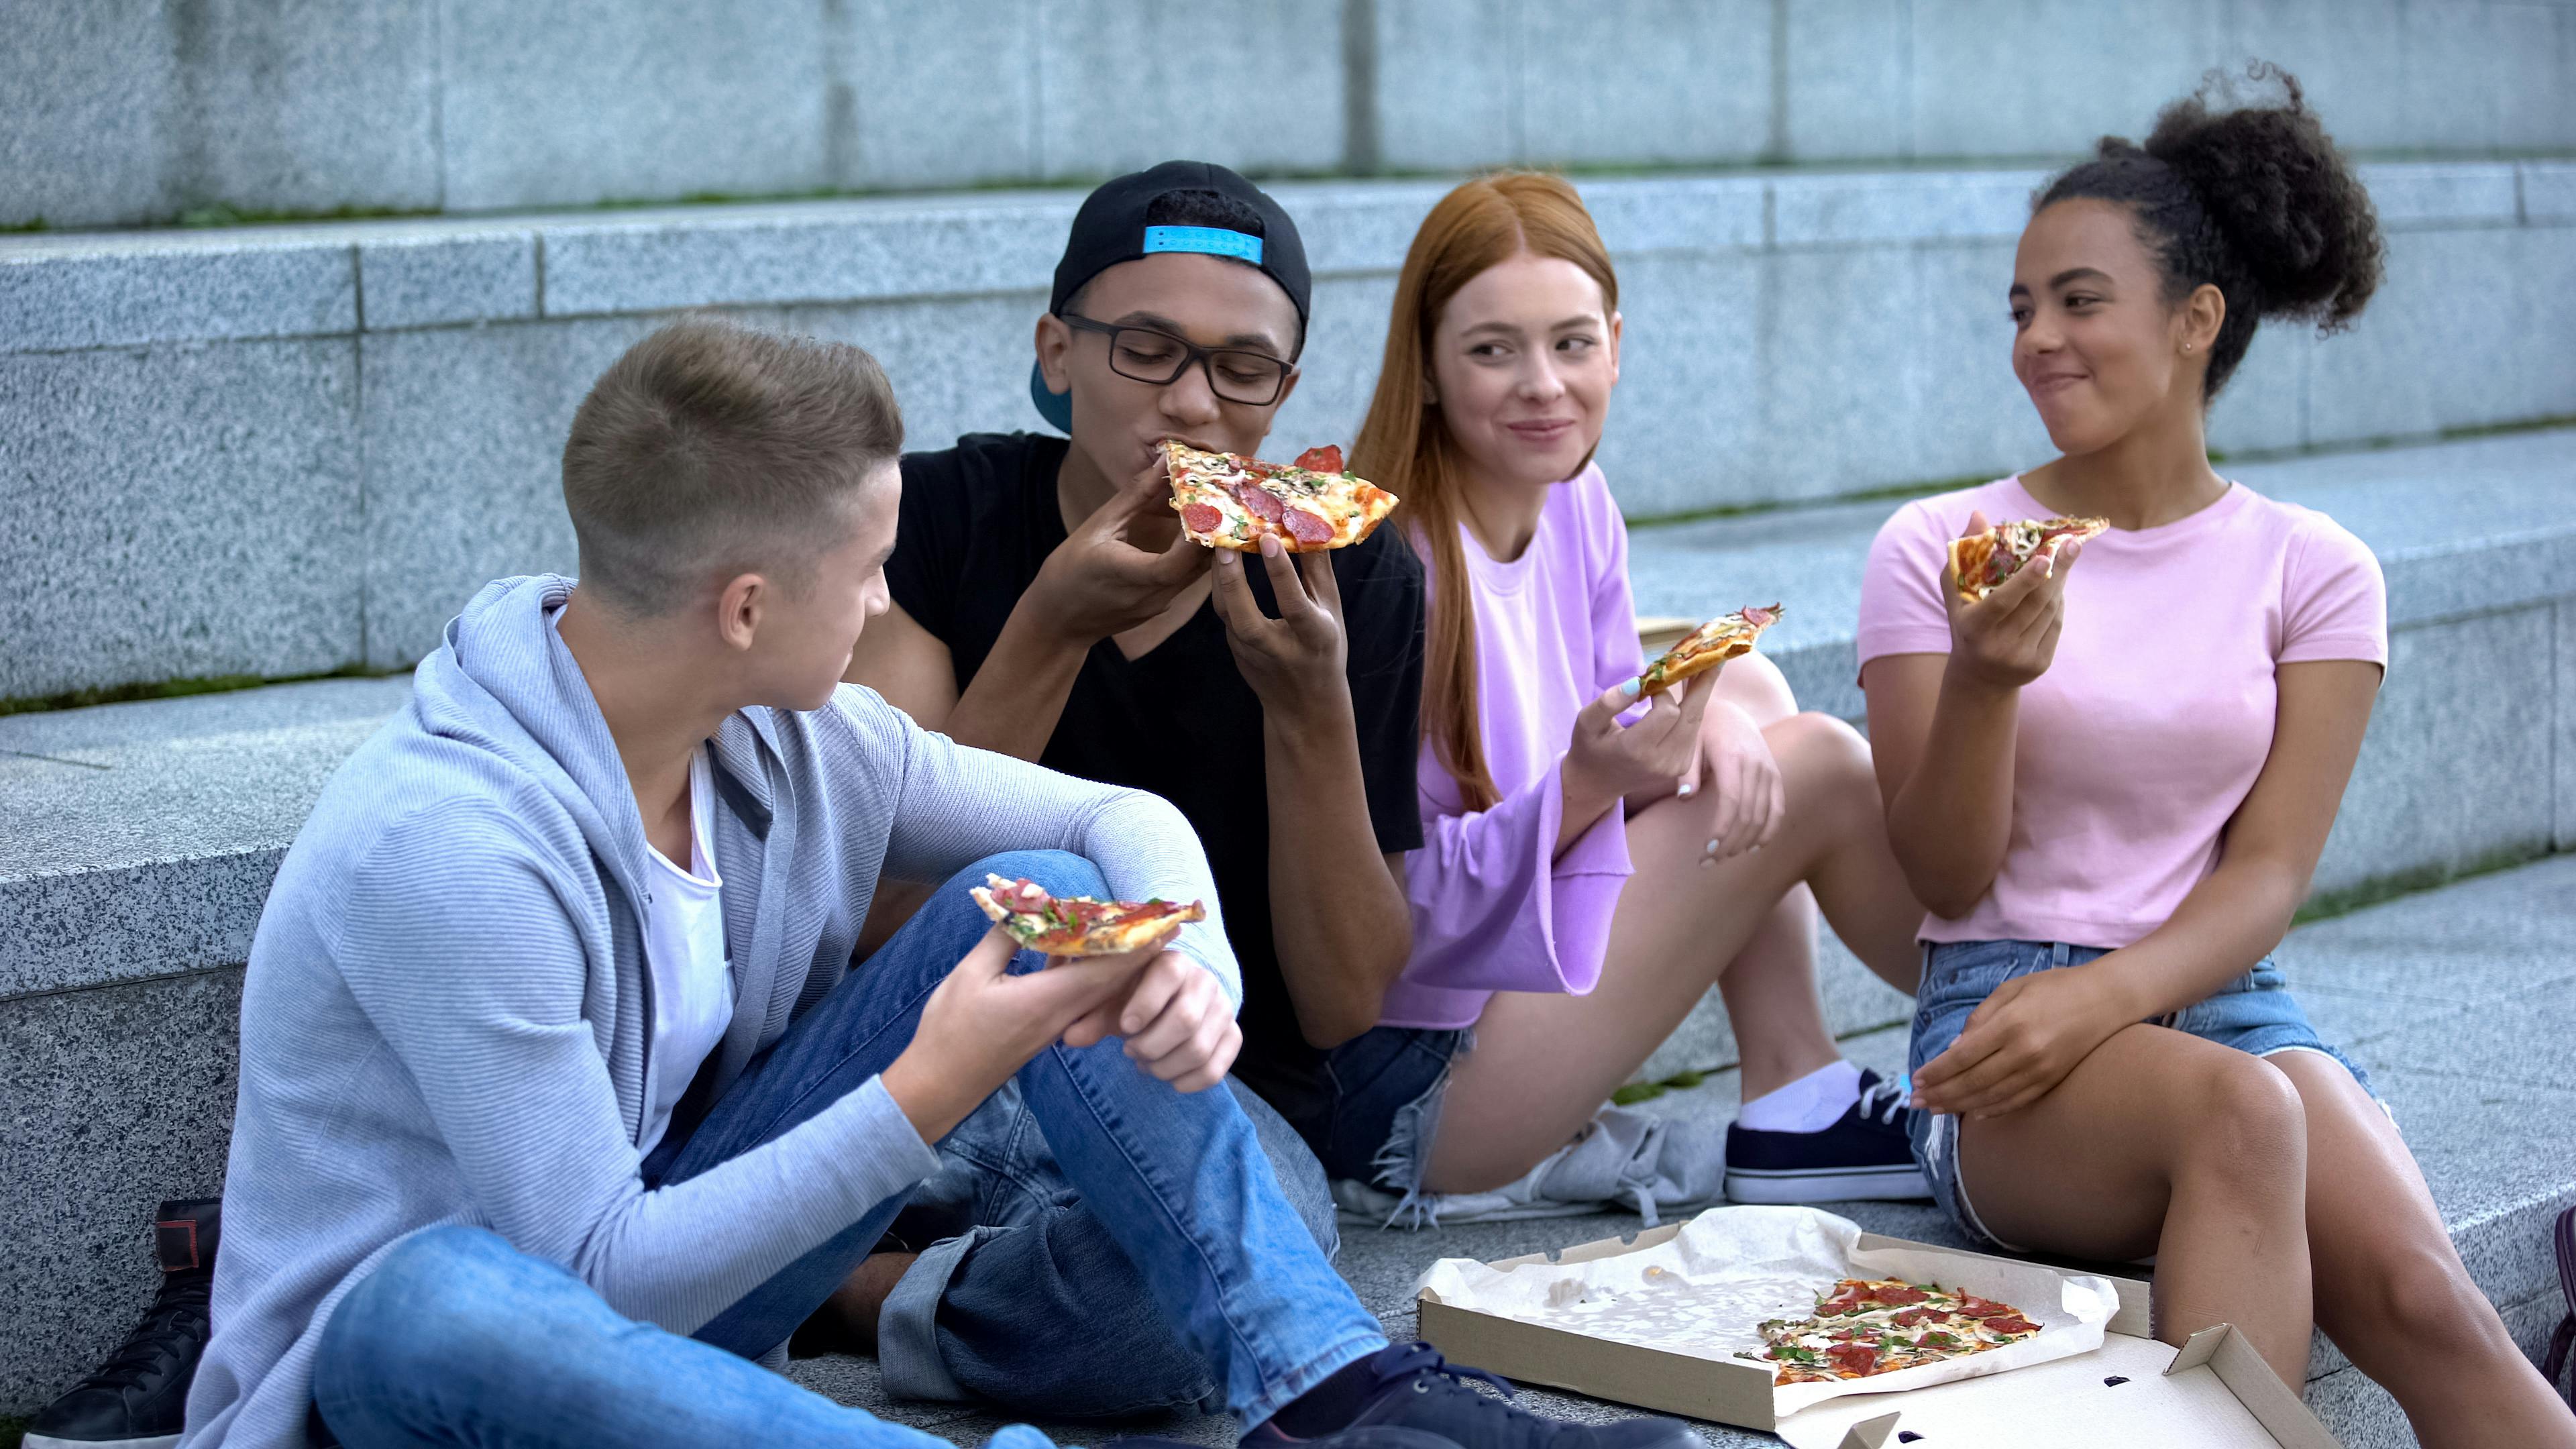 Teens eating pizza outside